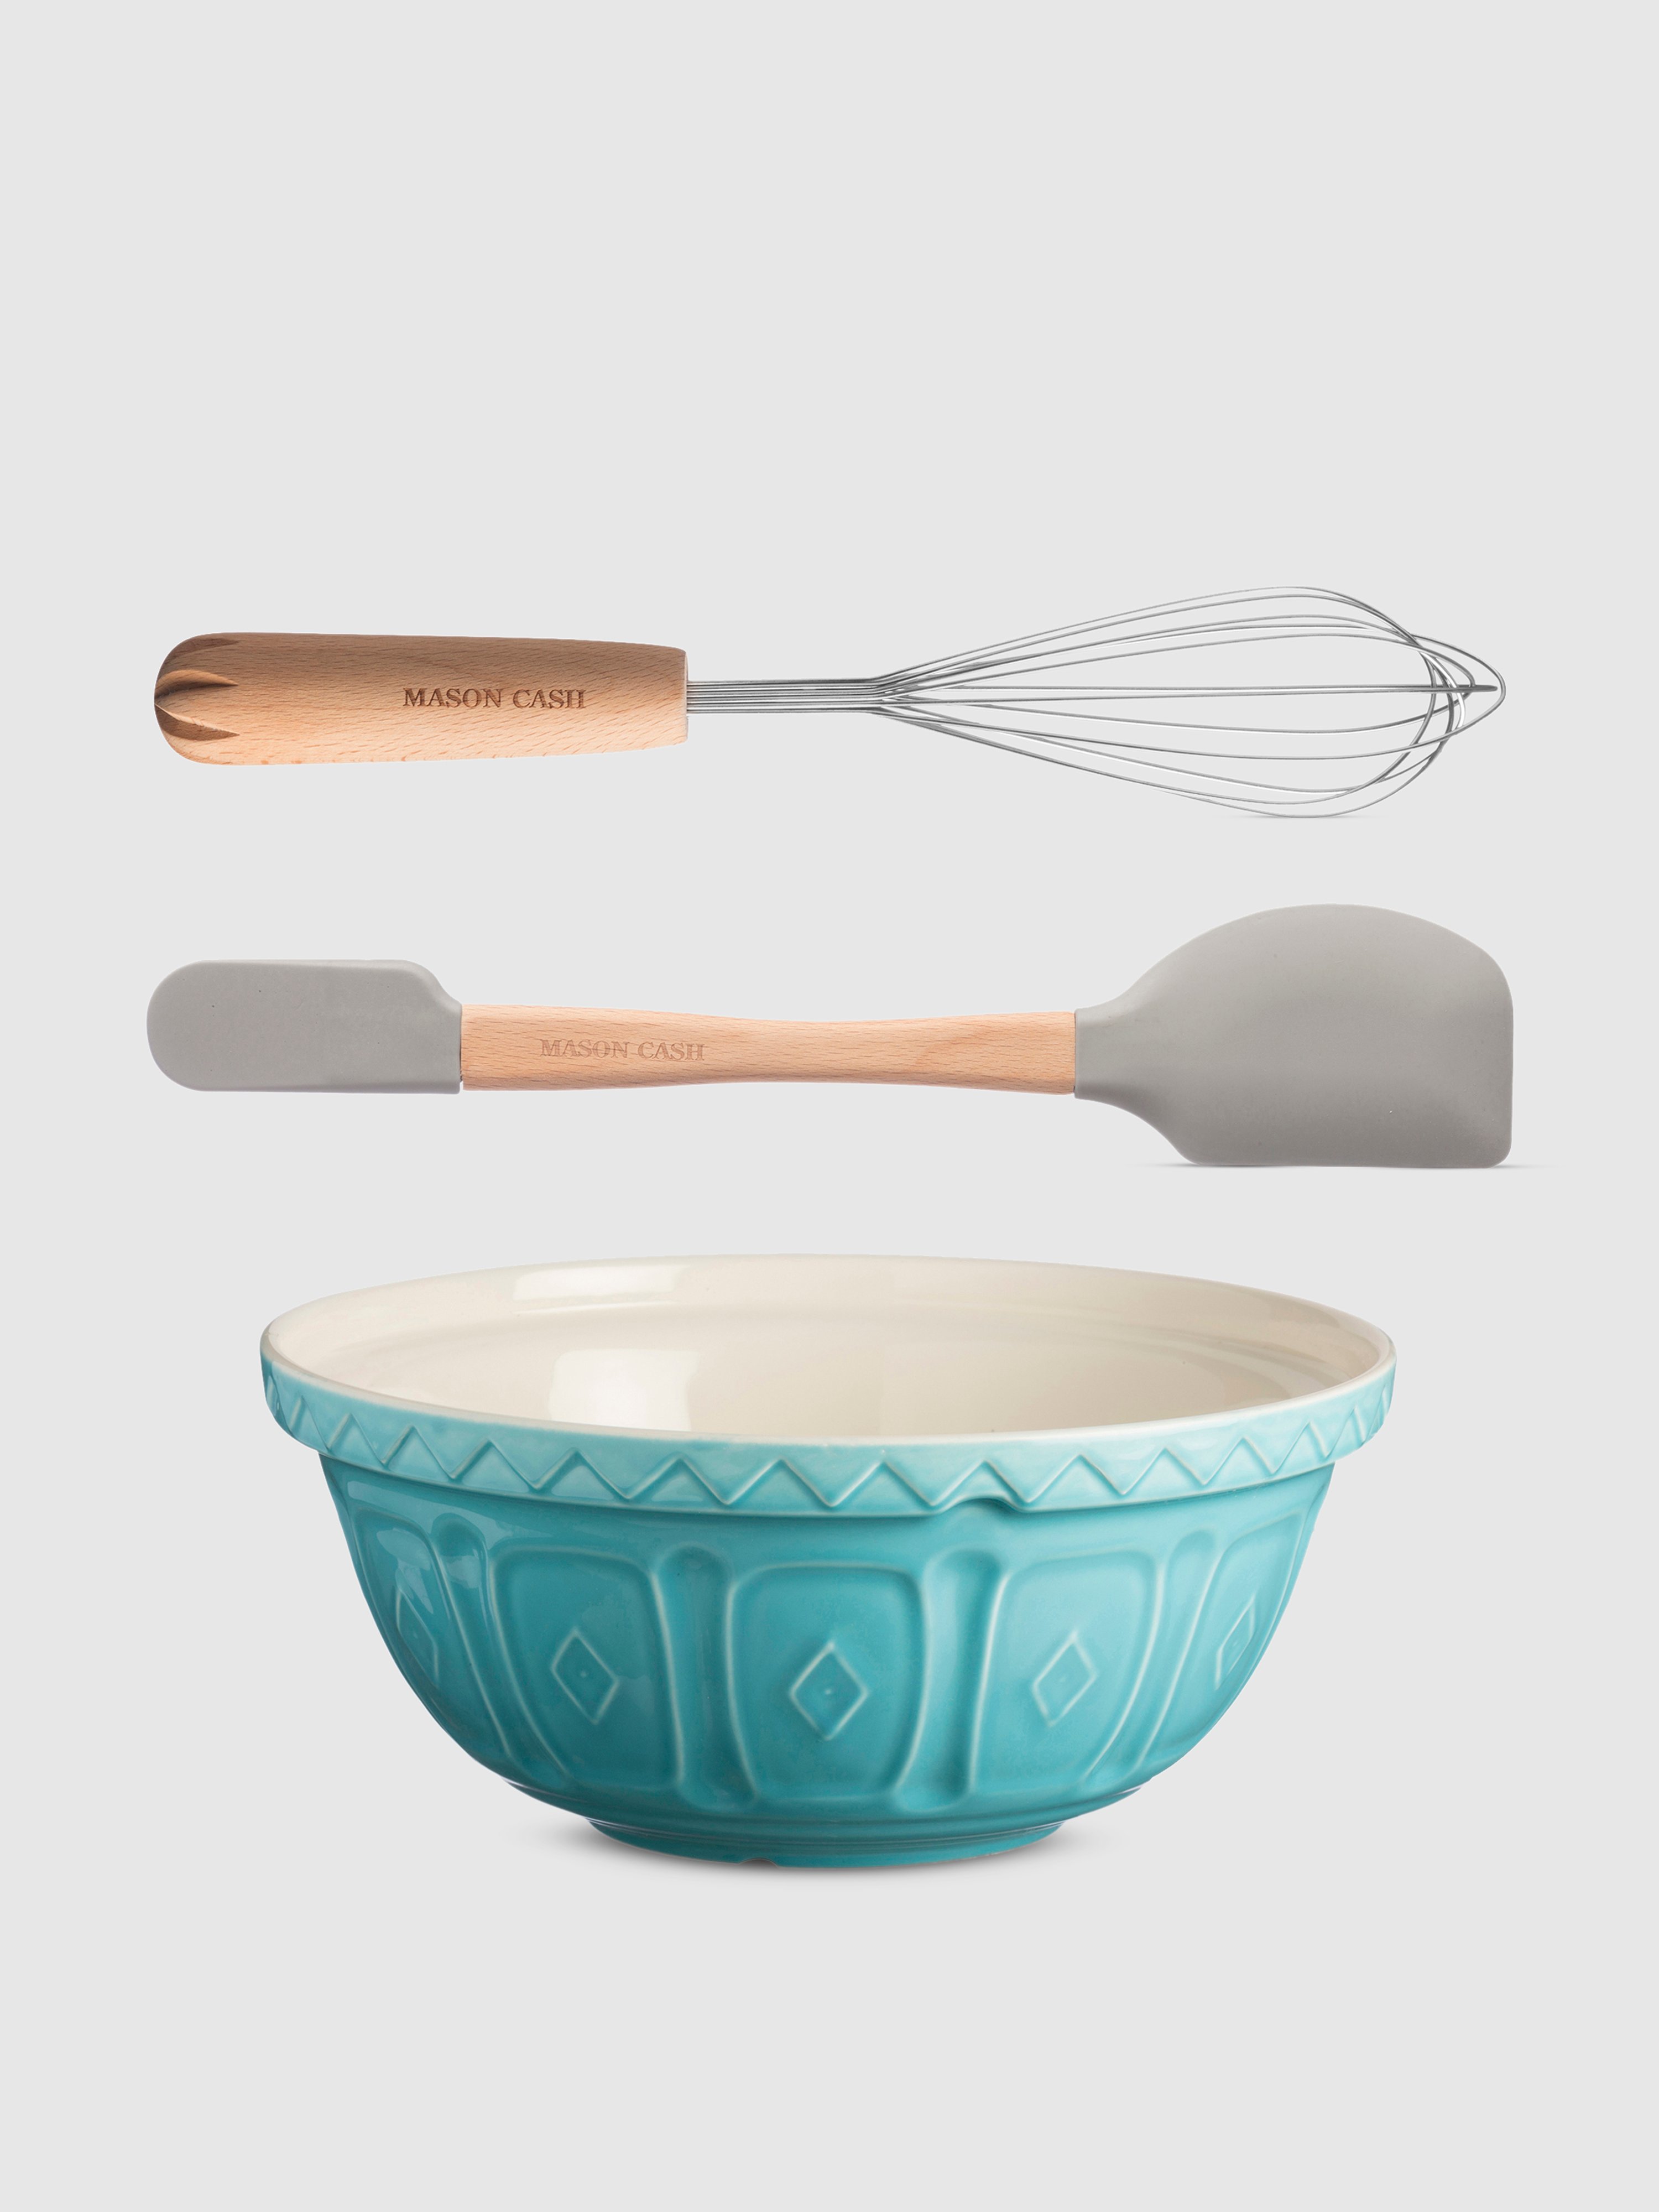 Mason Cash Cane Baking Tools, Set Of 3 In Turquoise